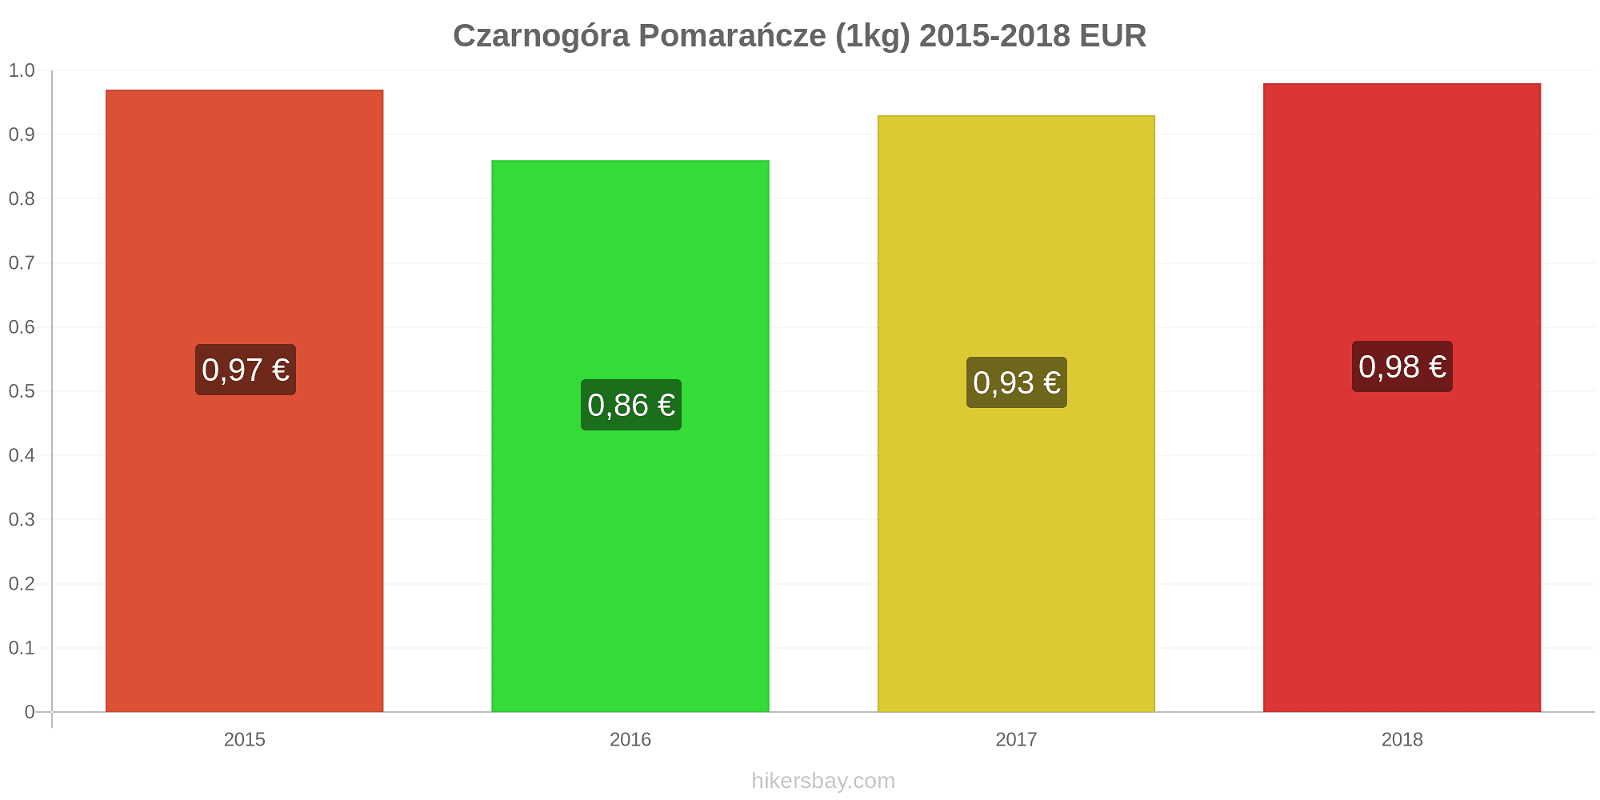 Czarnogóra zmiany cen Pomarańcze (1kg) hikersbay.com